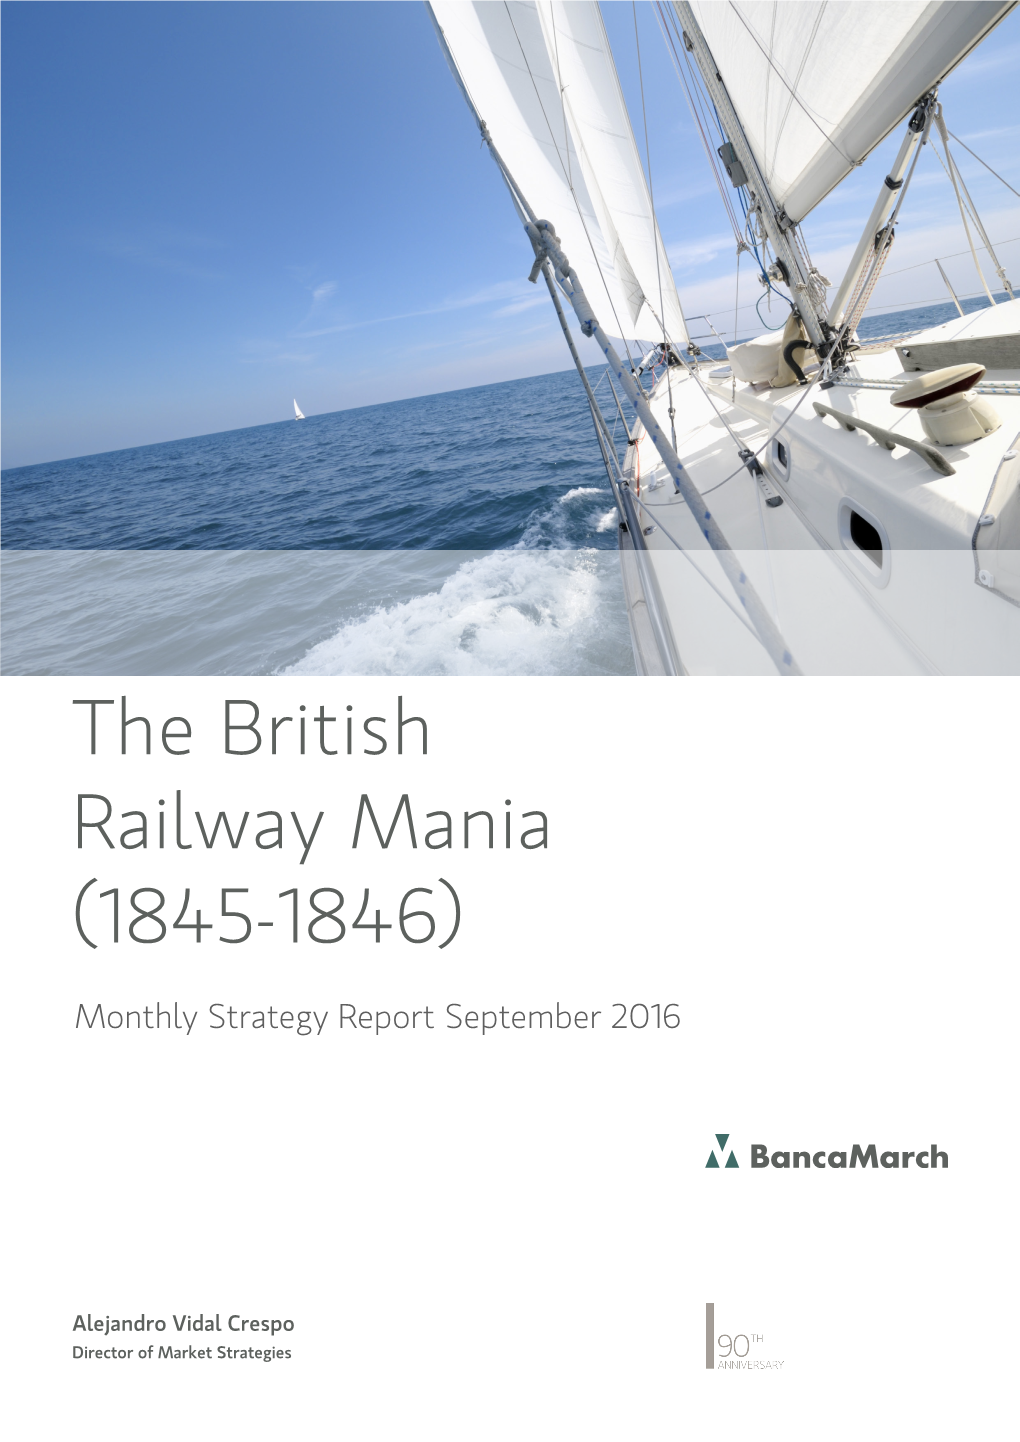 The British Railway Mania (1845-1846)